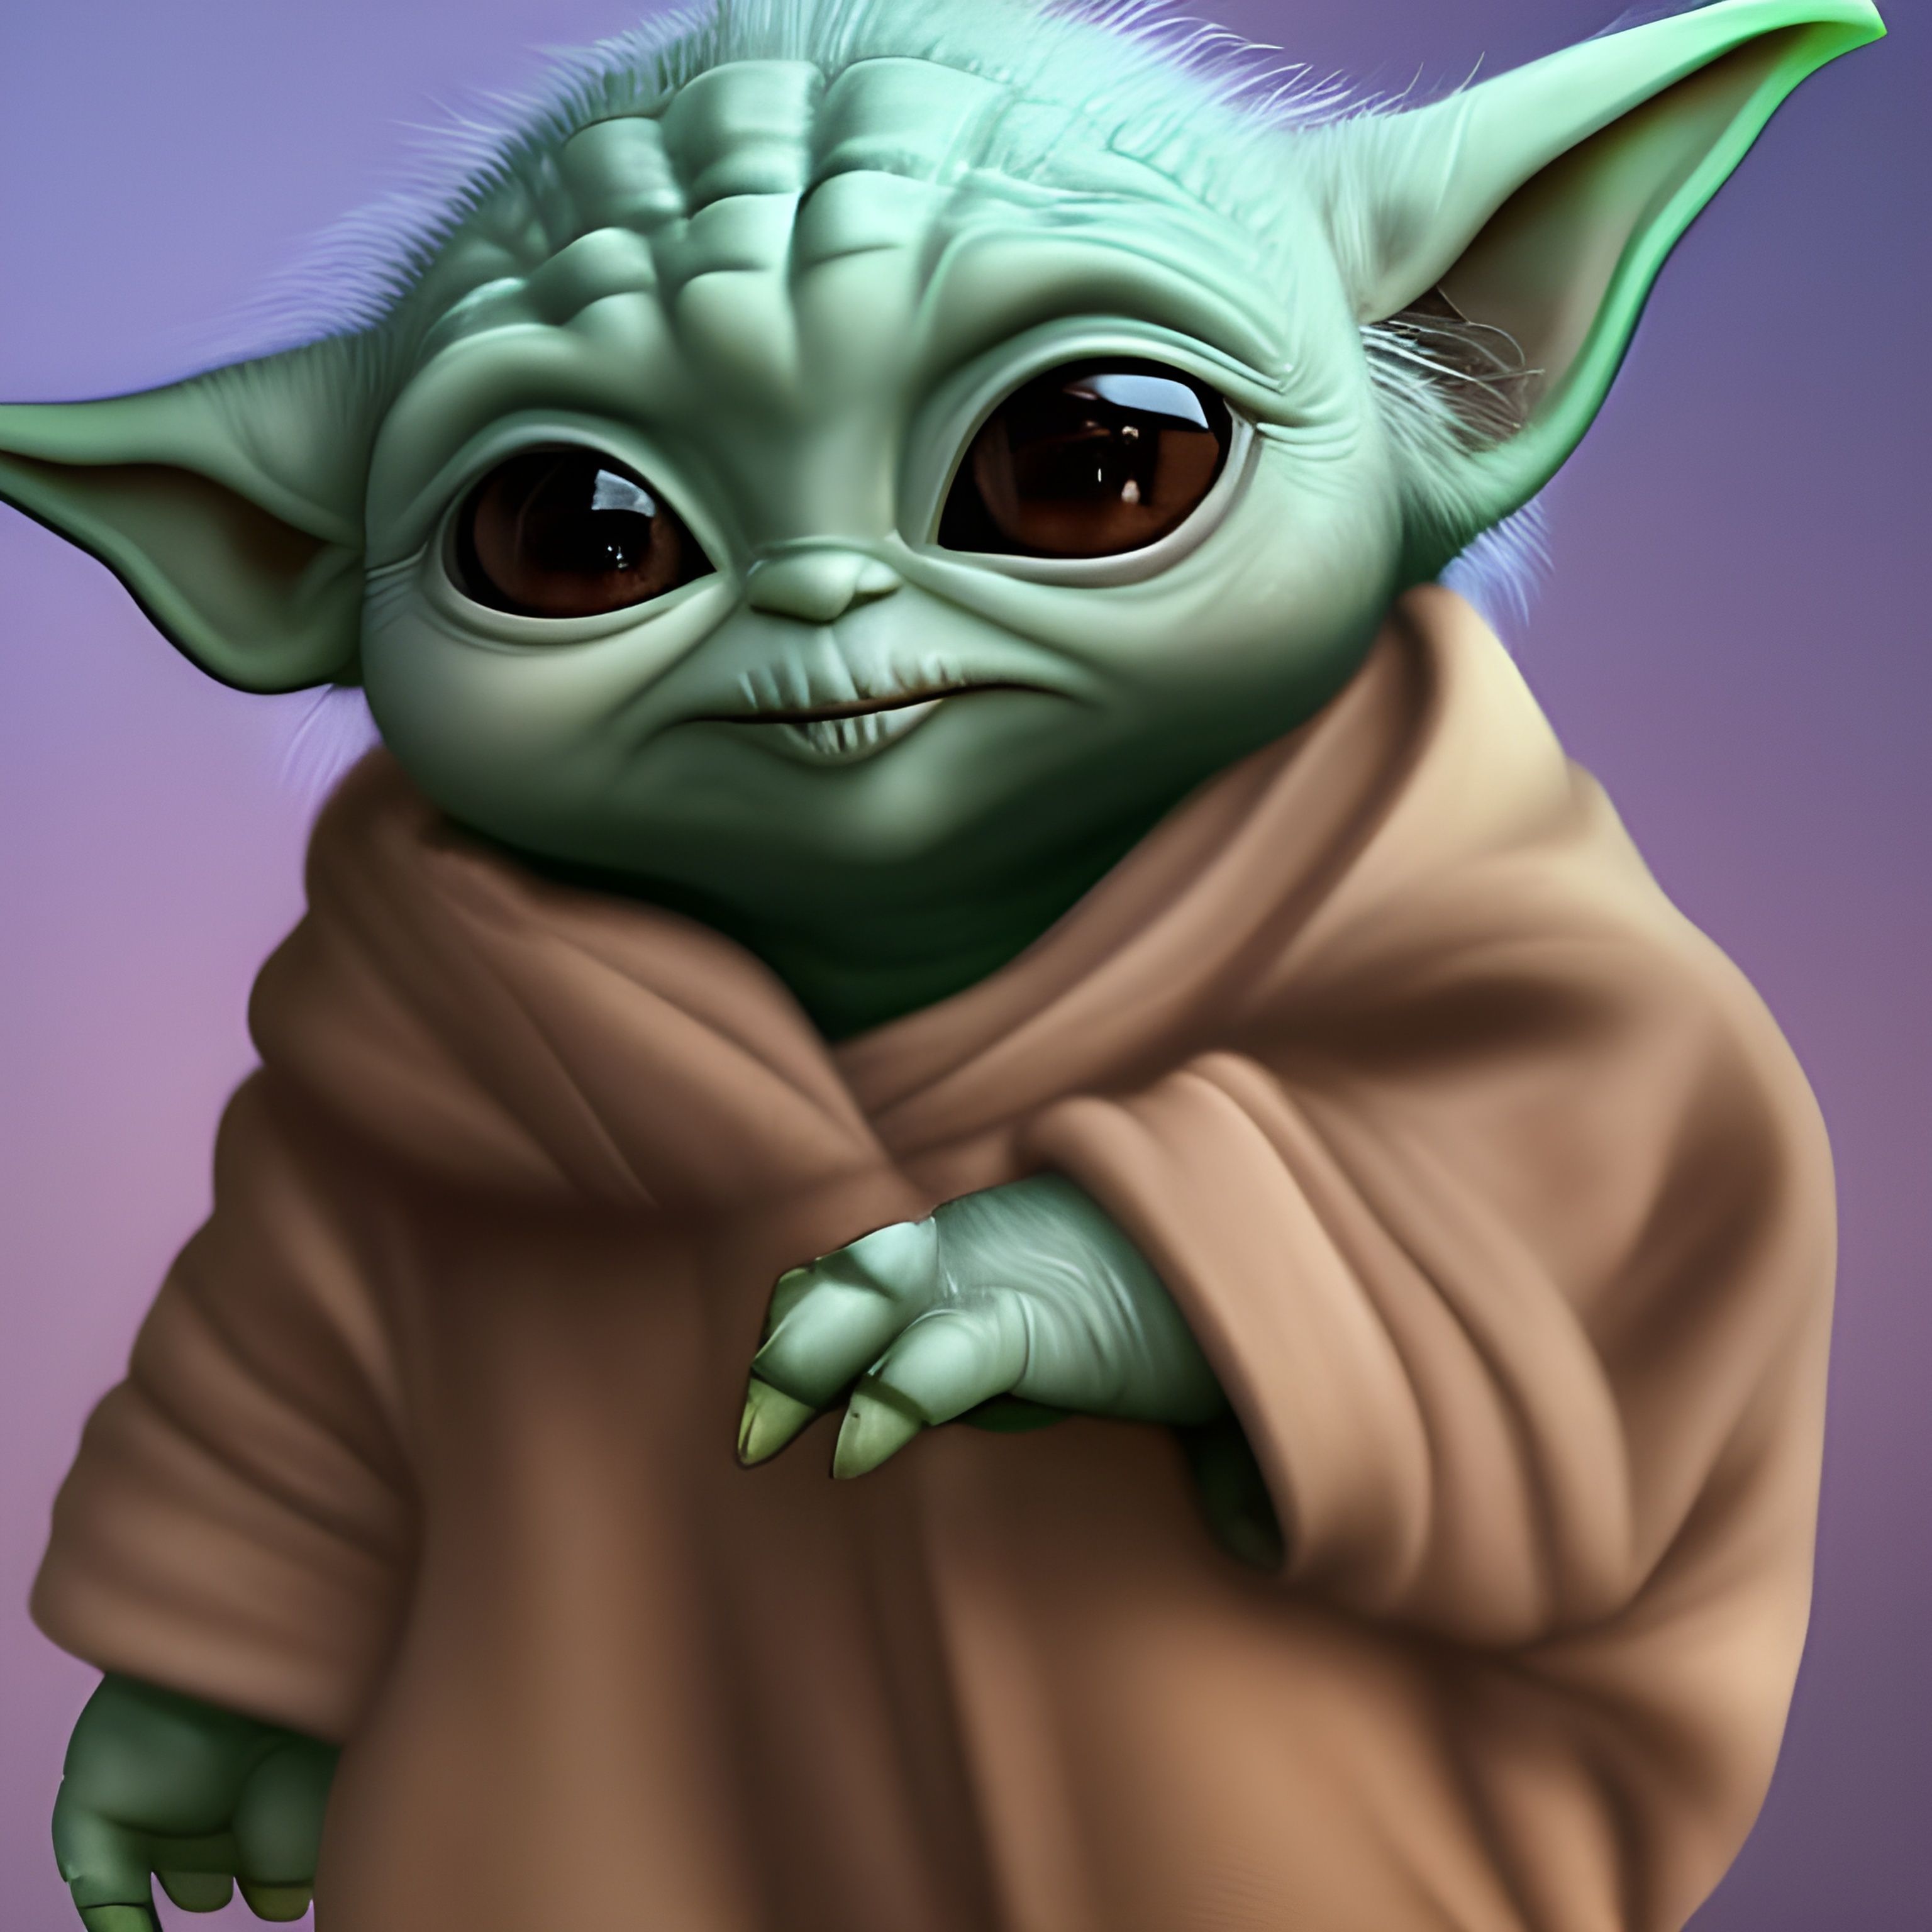 ArtStation - Baby Yoda Fan Art Painting